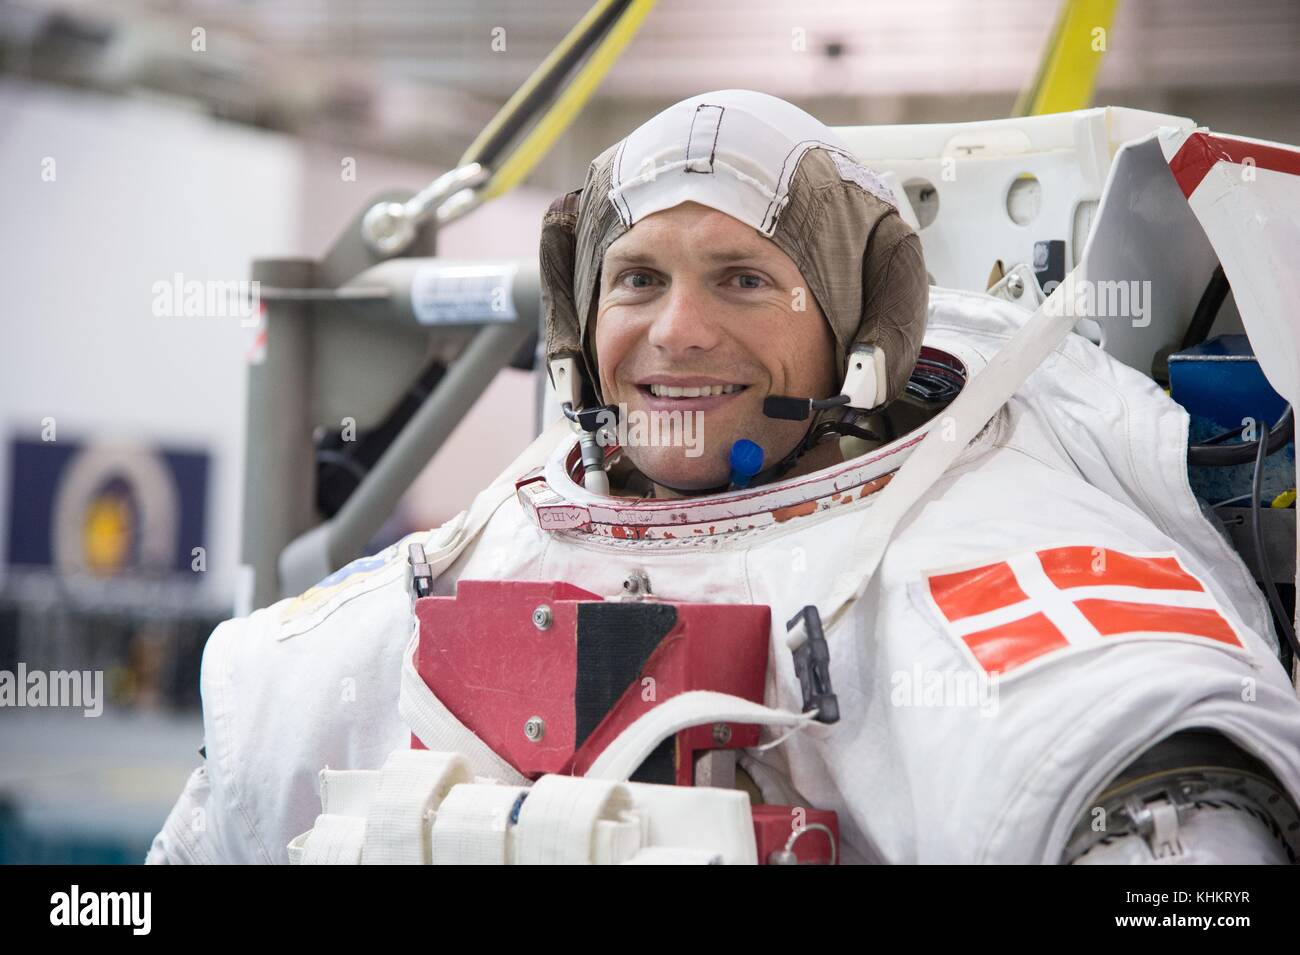 L'astronauta dell'esa andreas mogensen si prepara ad entrare la galleggiabilità neutra laboratorio spacewalk subacqueo di formazione presso il Johnson Space Center aprile 1, 2013 in Houston, Texas. Foto Stock